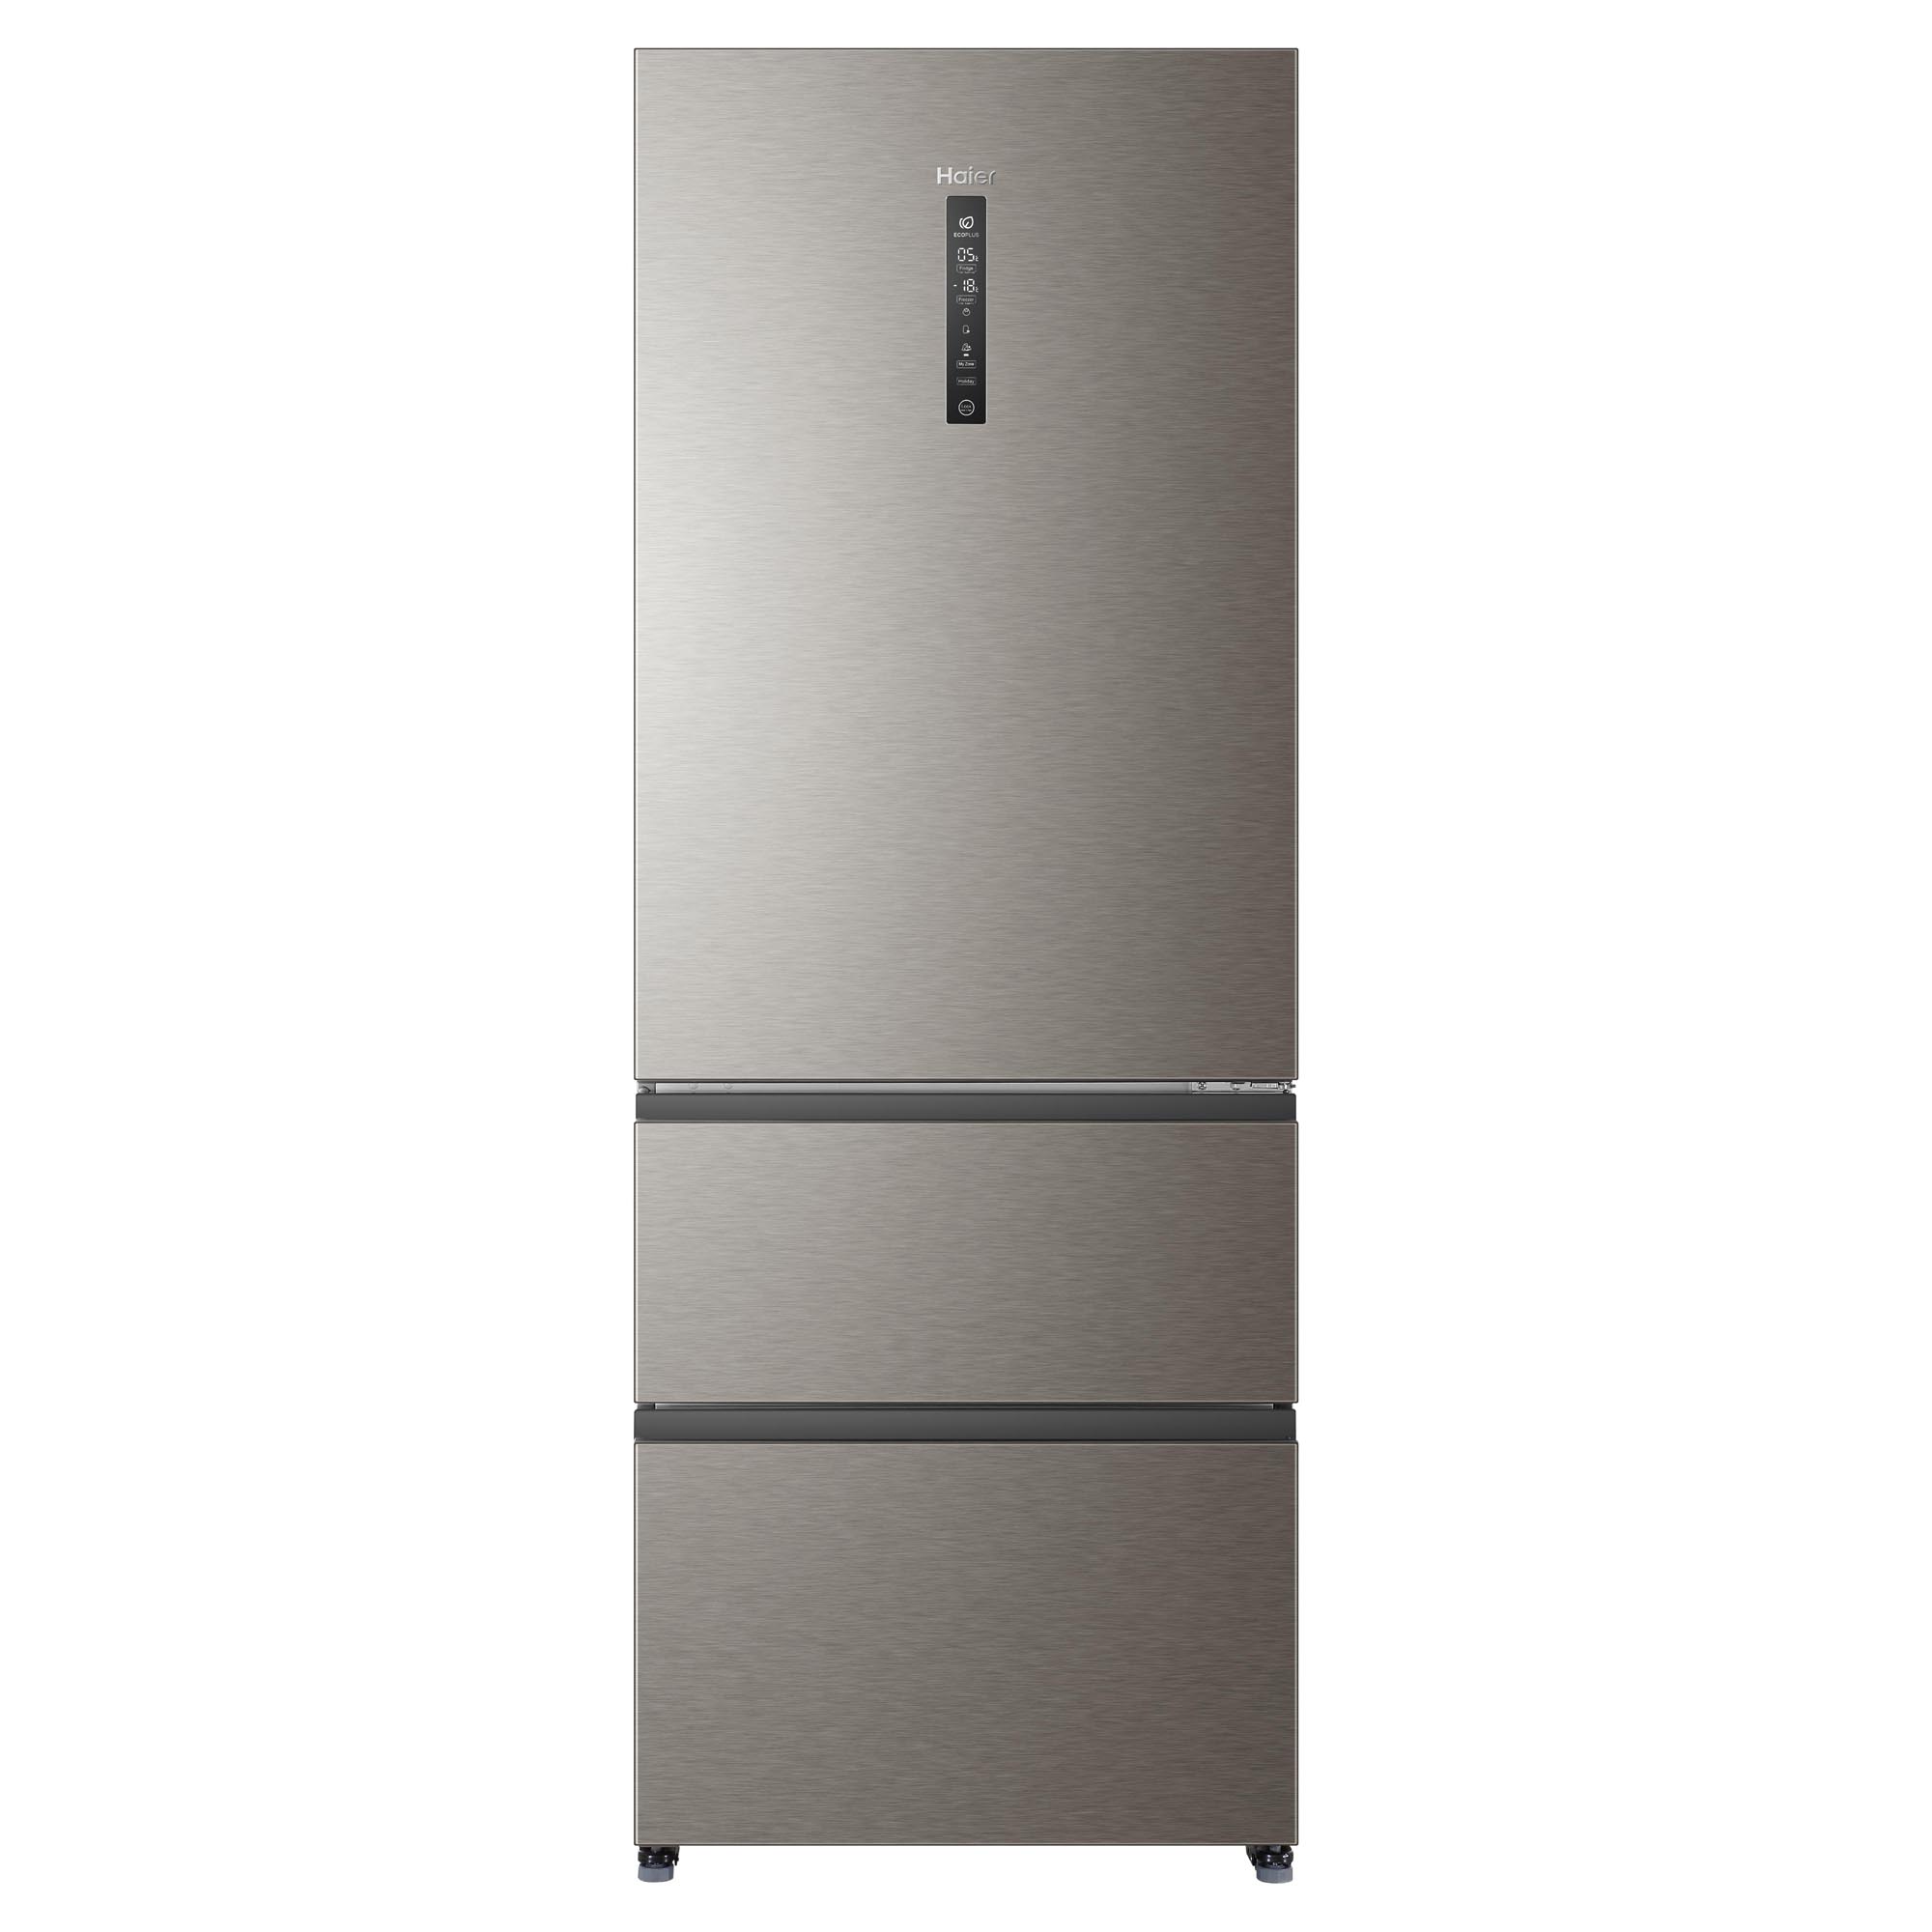 Haier золотистый. Холодильник Haier a4f742cmg. Холодильник Haier a4f742cmg, серебристый. Холодильник Хайер 742. Холодильник многодверный Haier a4f742cmg.